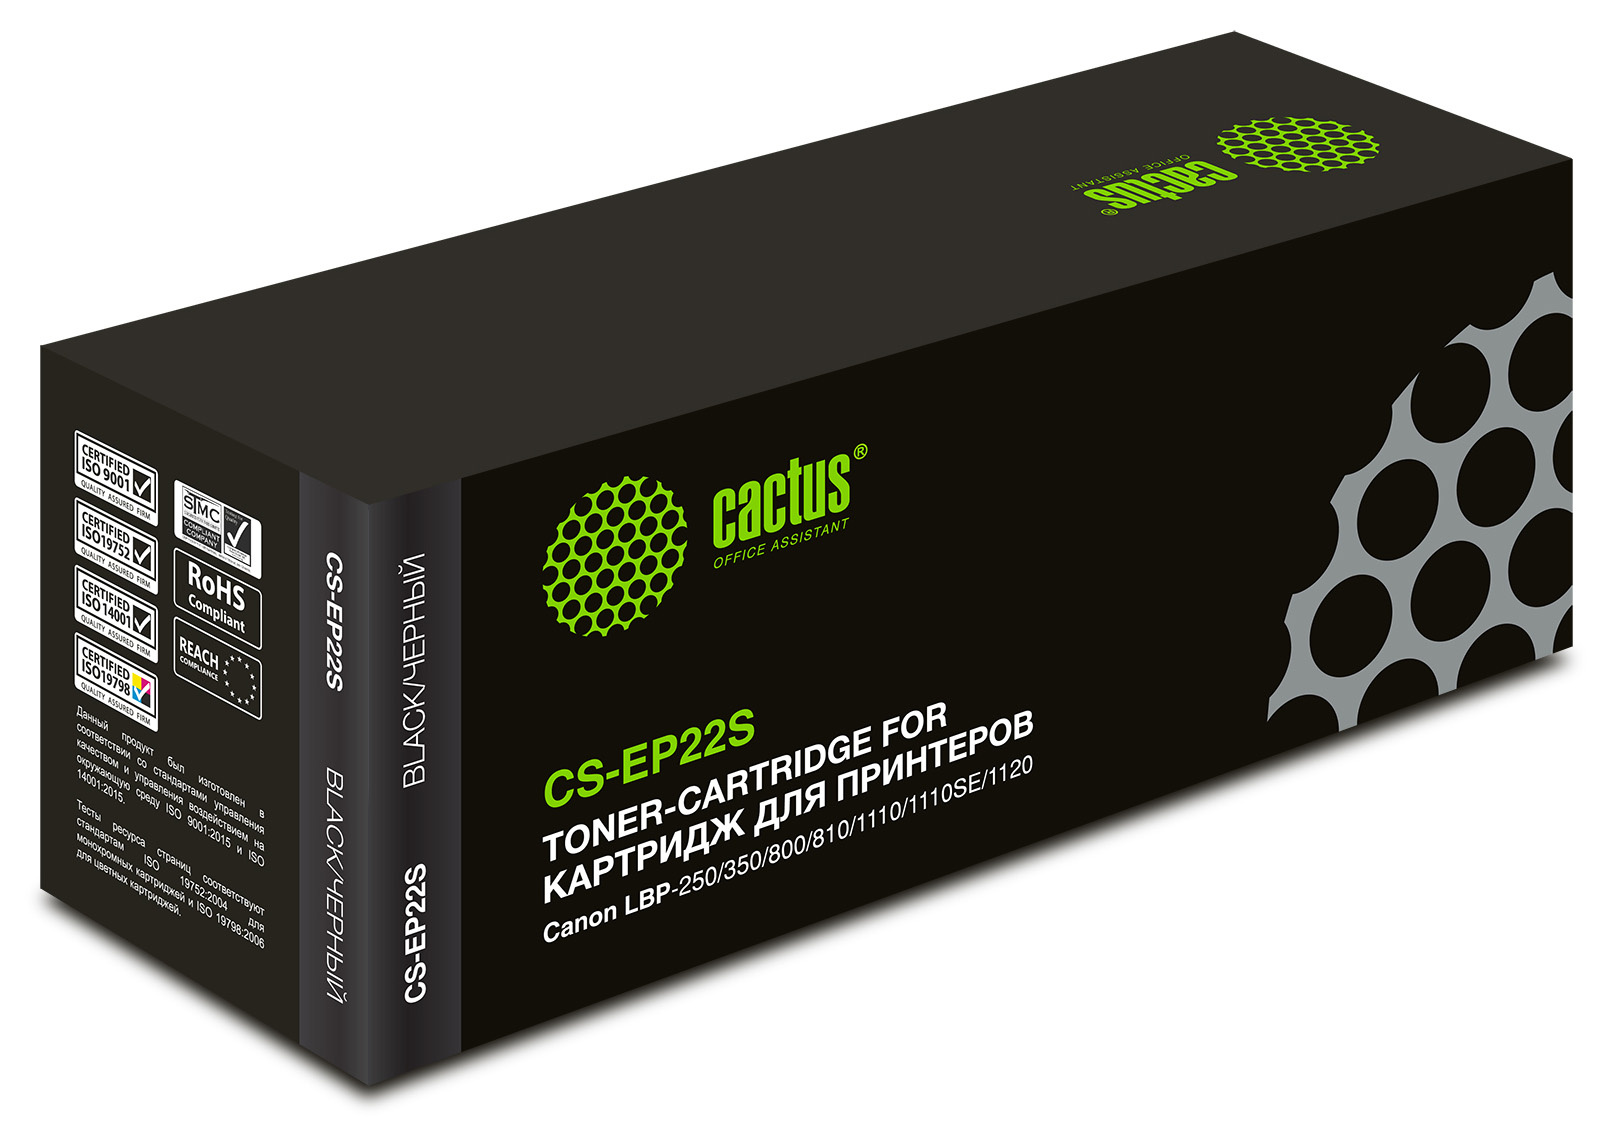 Картридж лазерный Cactus CS-EP22S EP-22 черный (2500стр.) для Canon LBP-250/350/800/810/1110/1110SE/1120